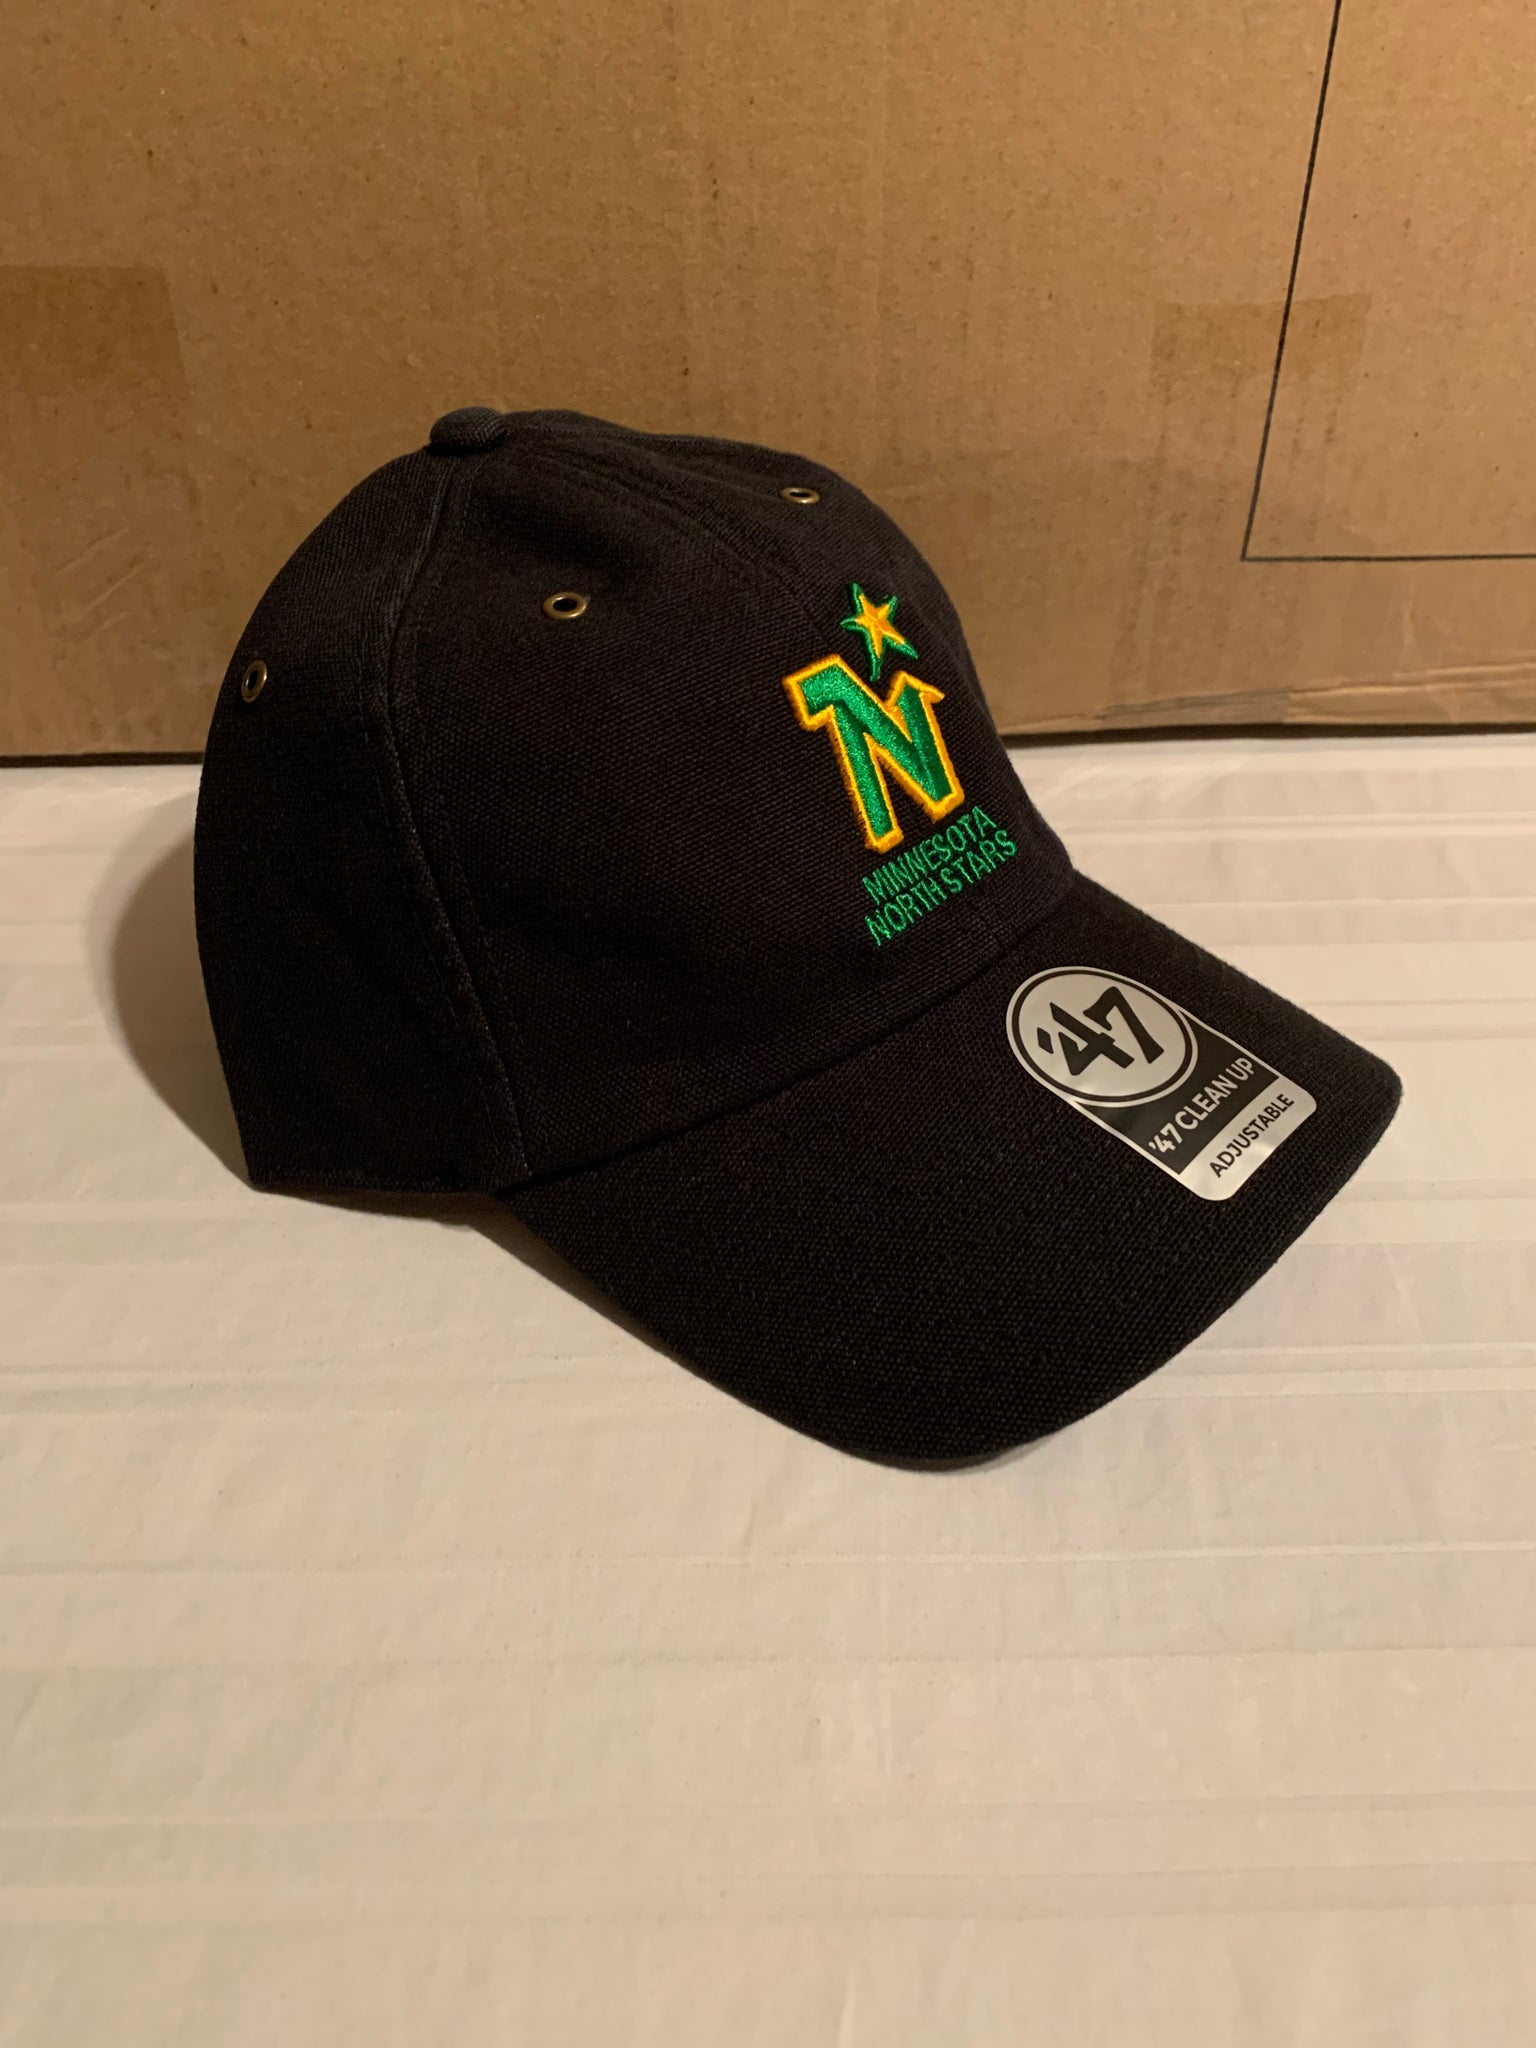 Minnesota North Stars Vintage hockey team distressed Cap for Sale